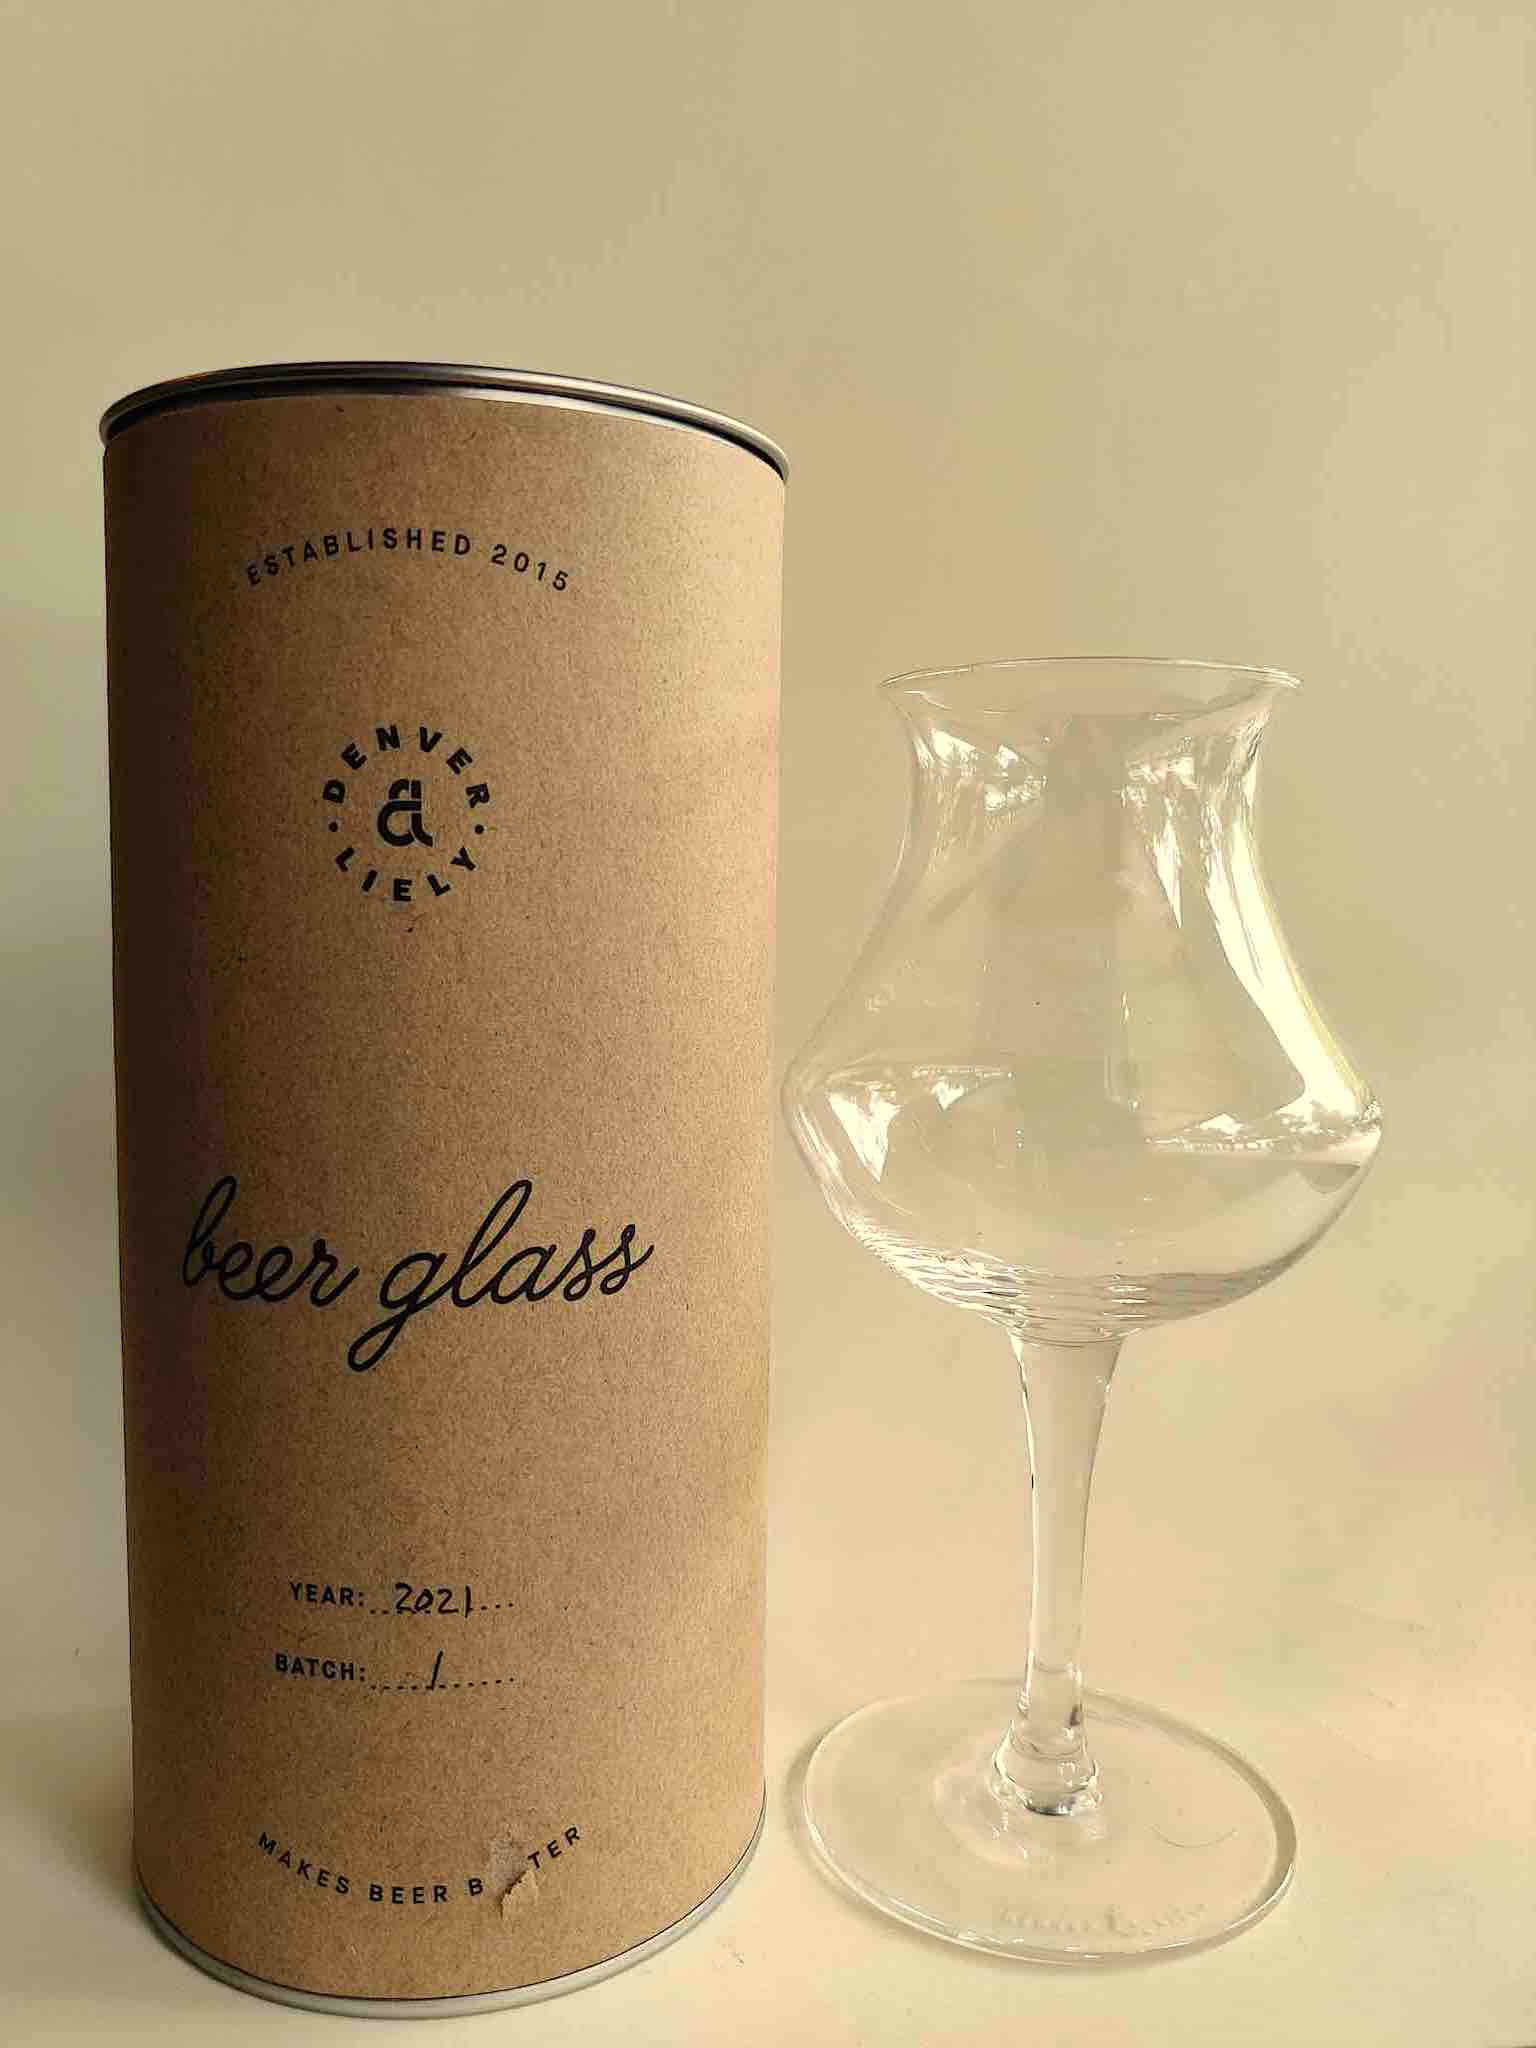 A handmade beer glass from Denver & Liely.